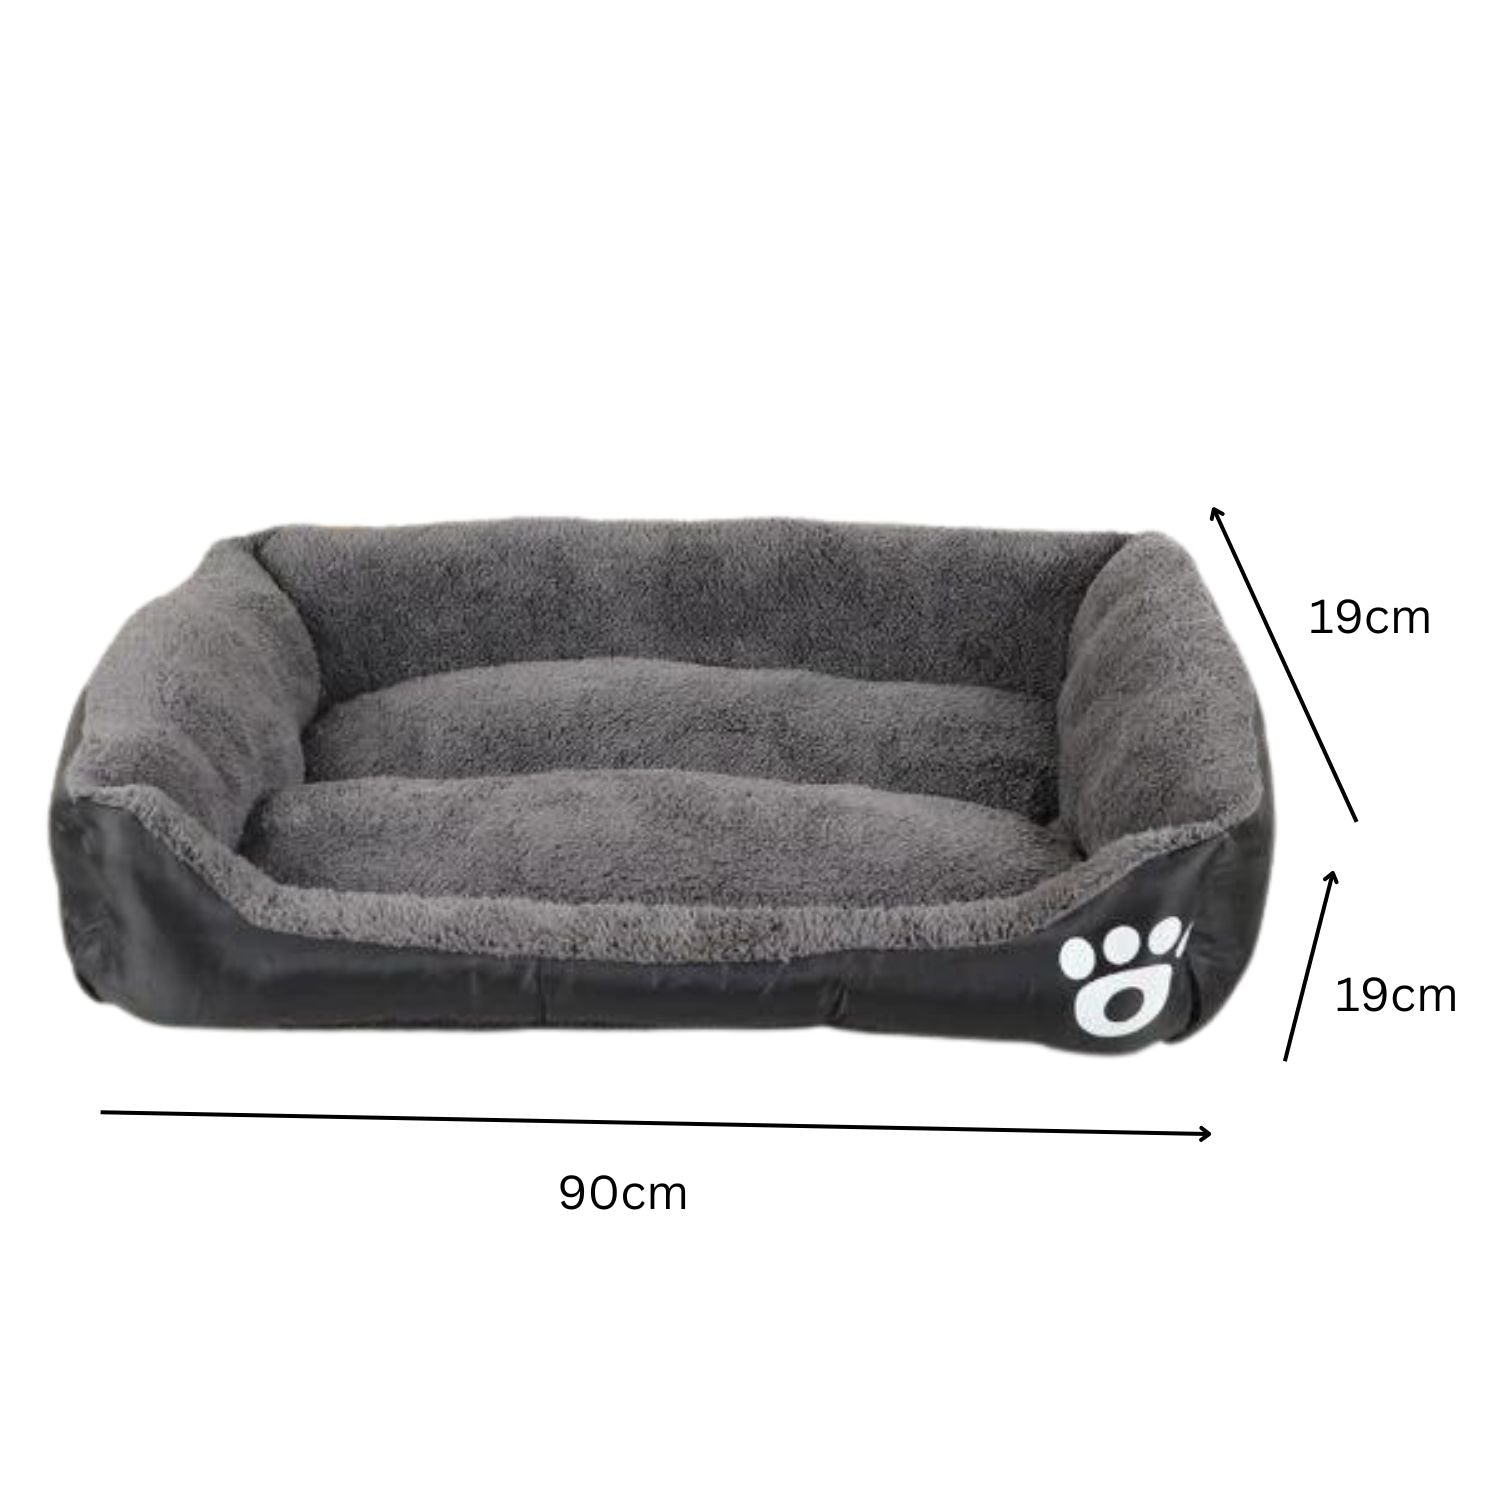 XL size pet bed 